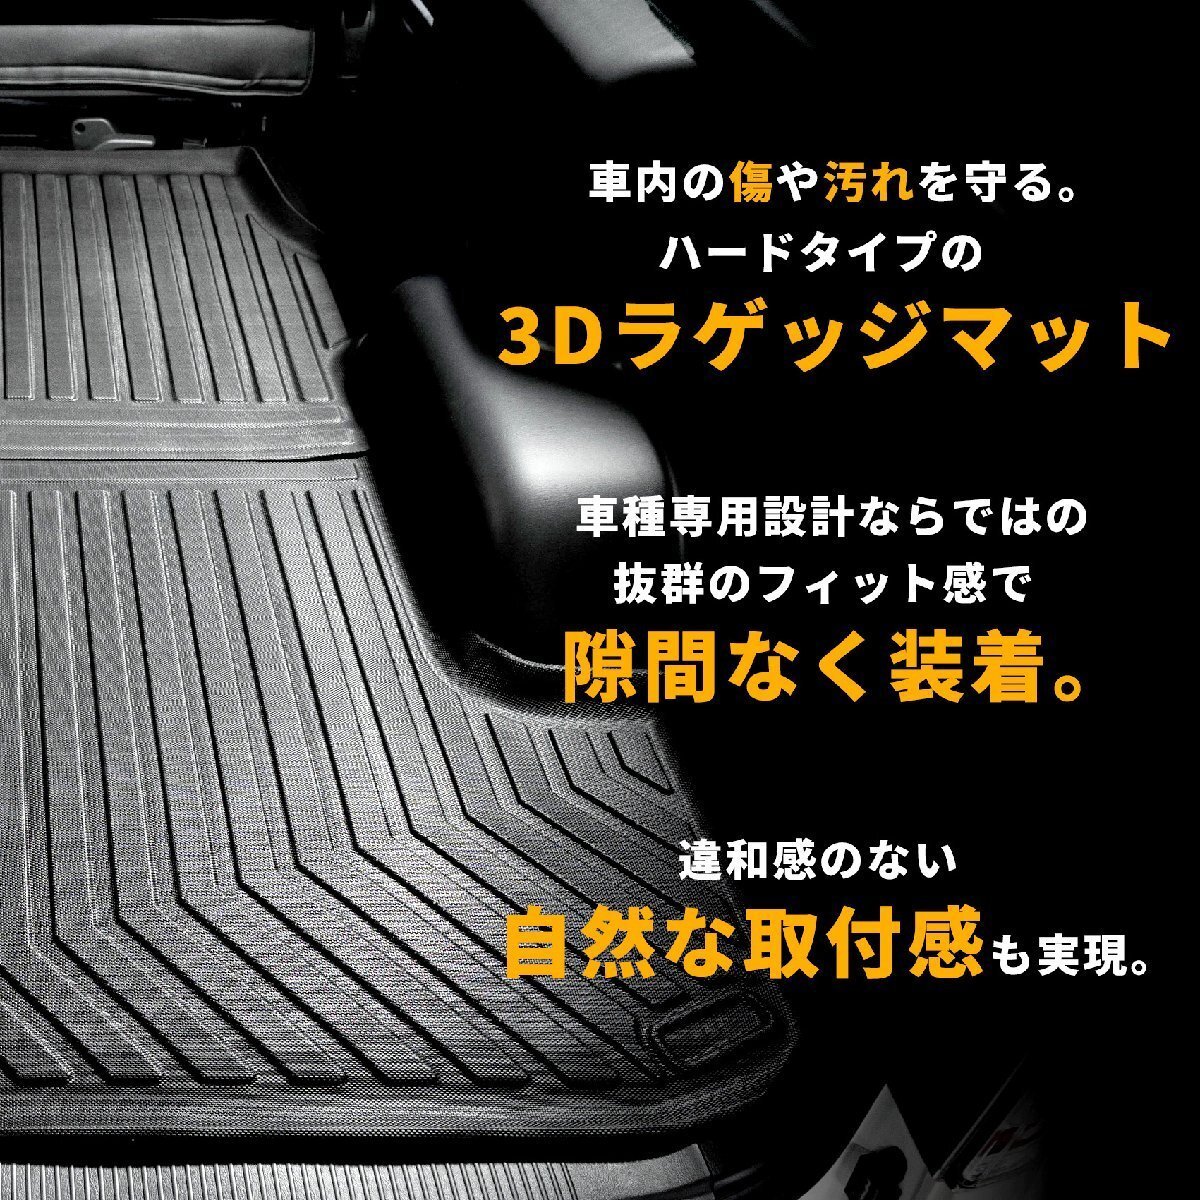  ограниченное количество \\1 старт 200 серия Hiace S-GL narrow 3D багажный коврик [ автоматическая раздвижная дверь соответствует ]( cargo коврик / коврик на пол ) <1 type /2 type /